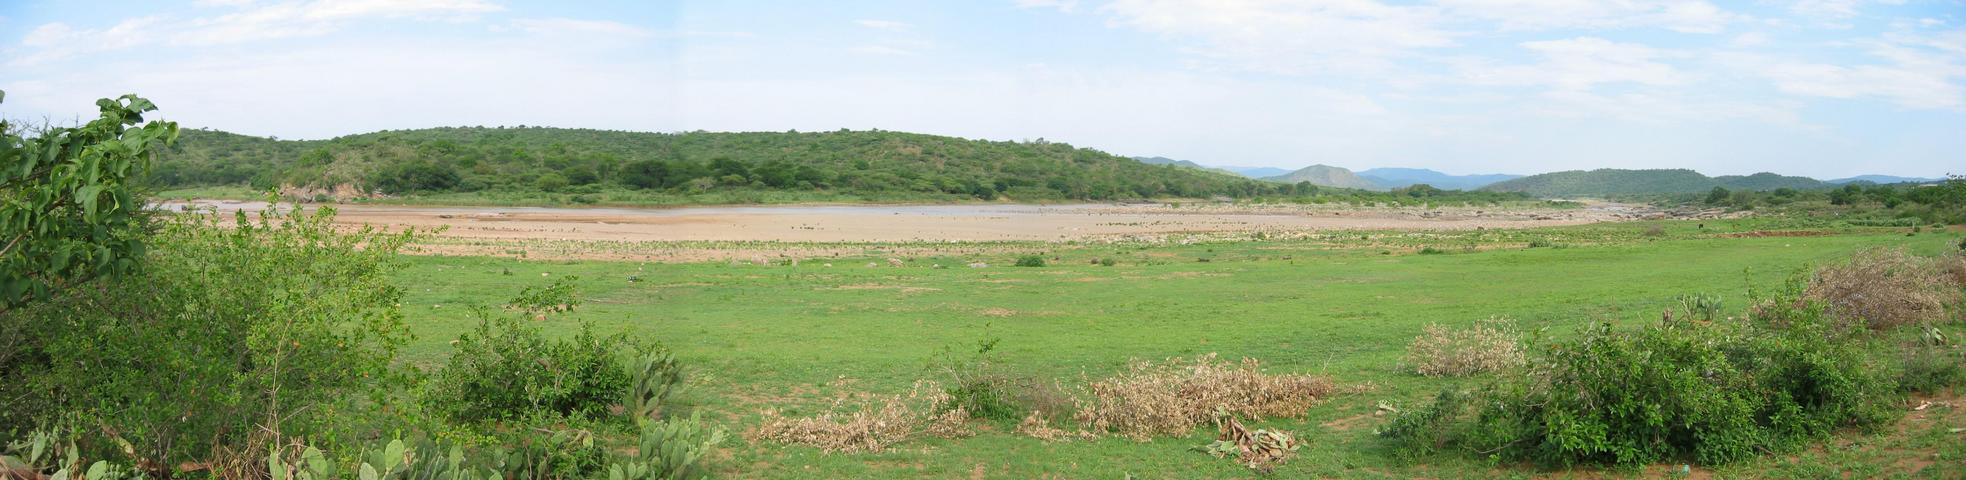 Panorama of Tugela River